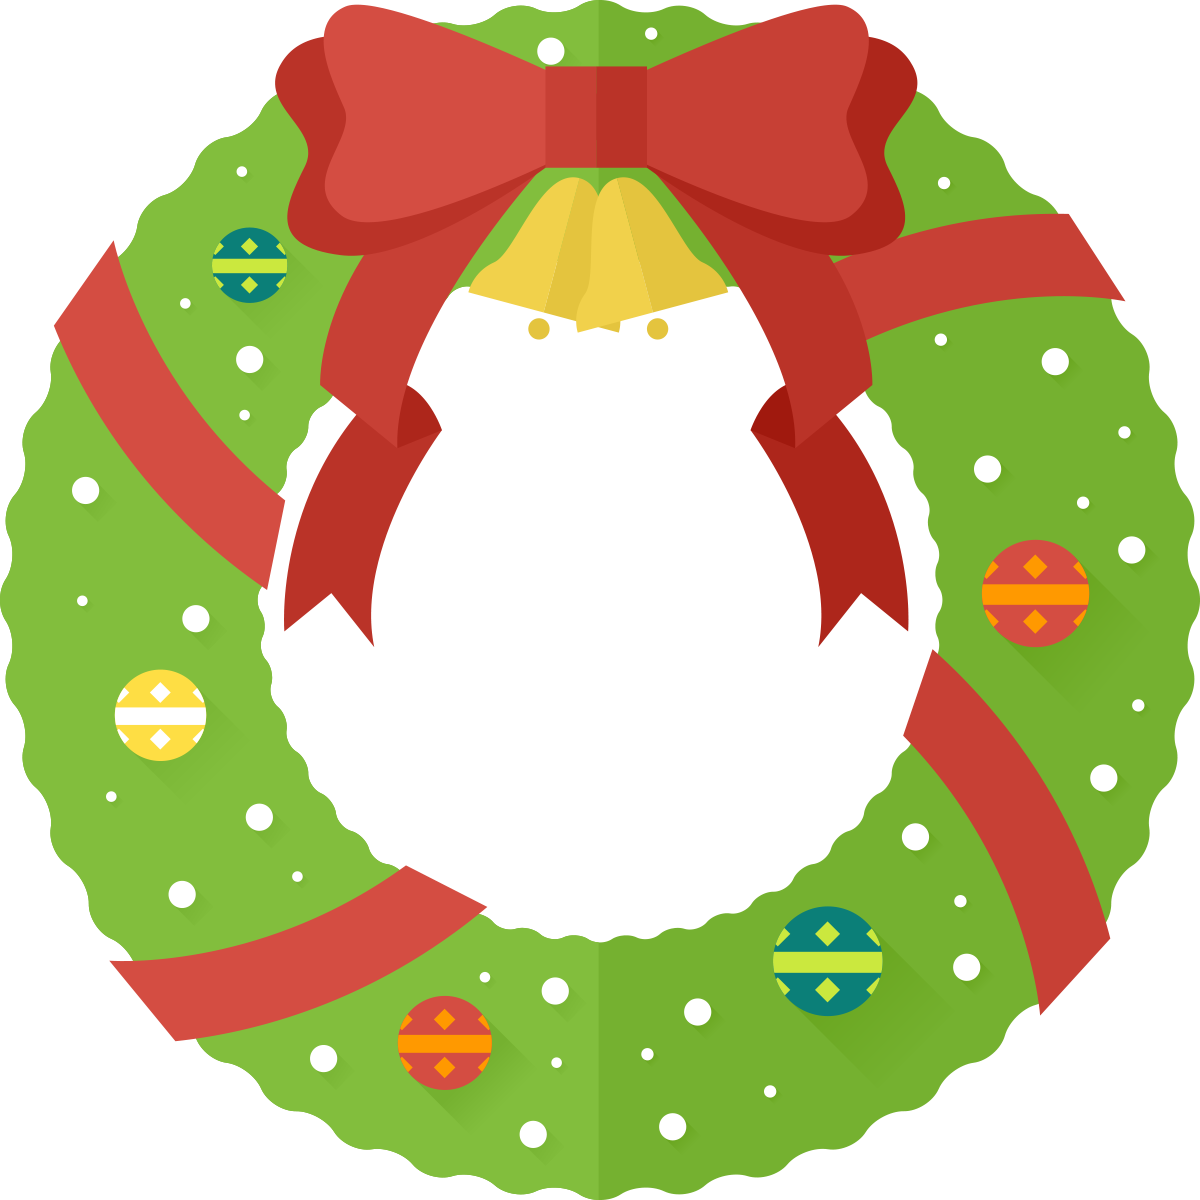 Free Christmas Wreath Clip Ar